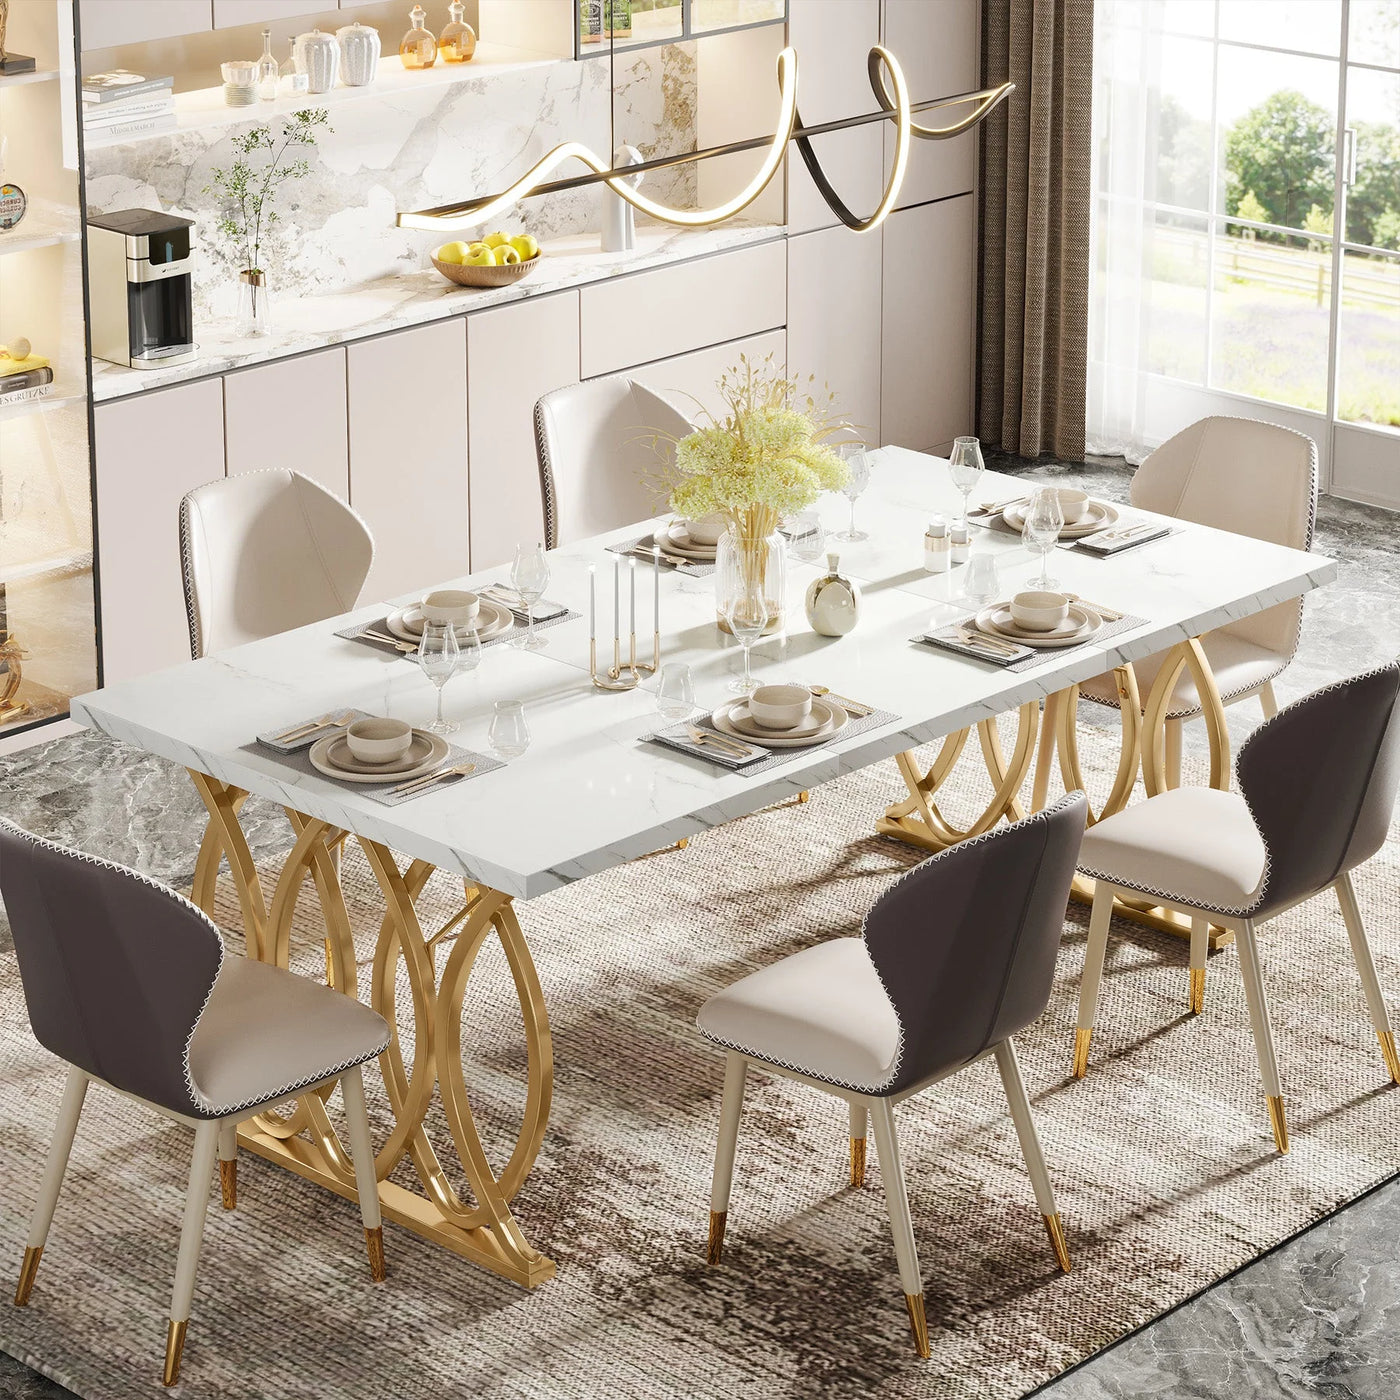 Verre Mesa de comedor moderna de 63 pulgadas con tablero de madera marrón para mesa de cocina de 4 a 6 personas